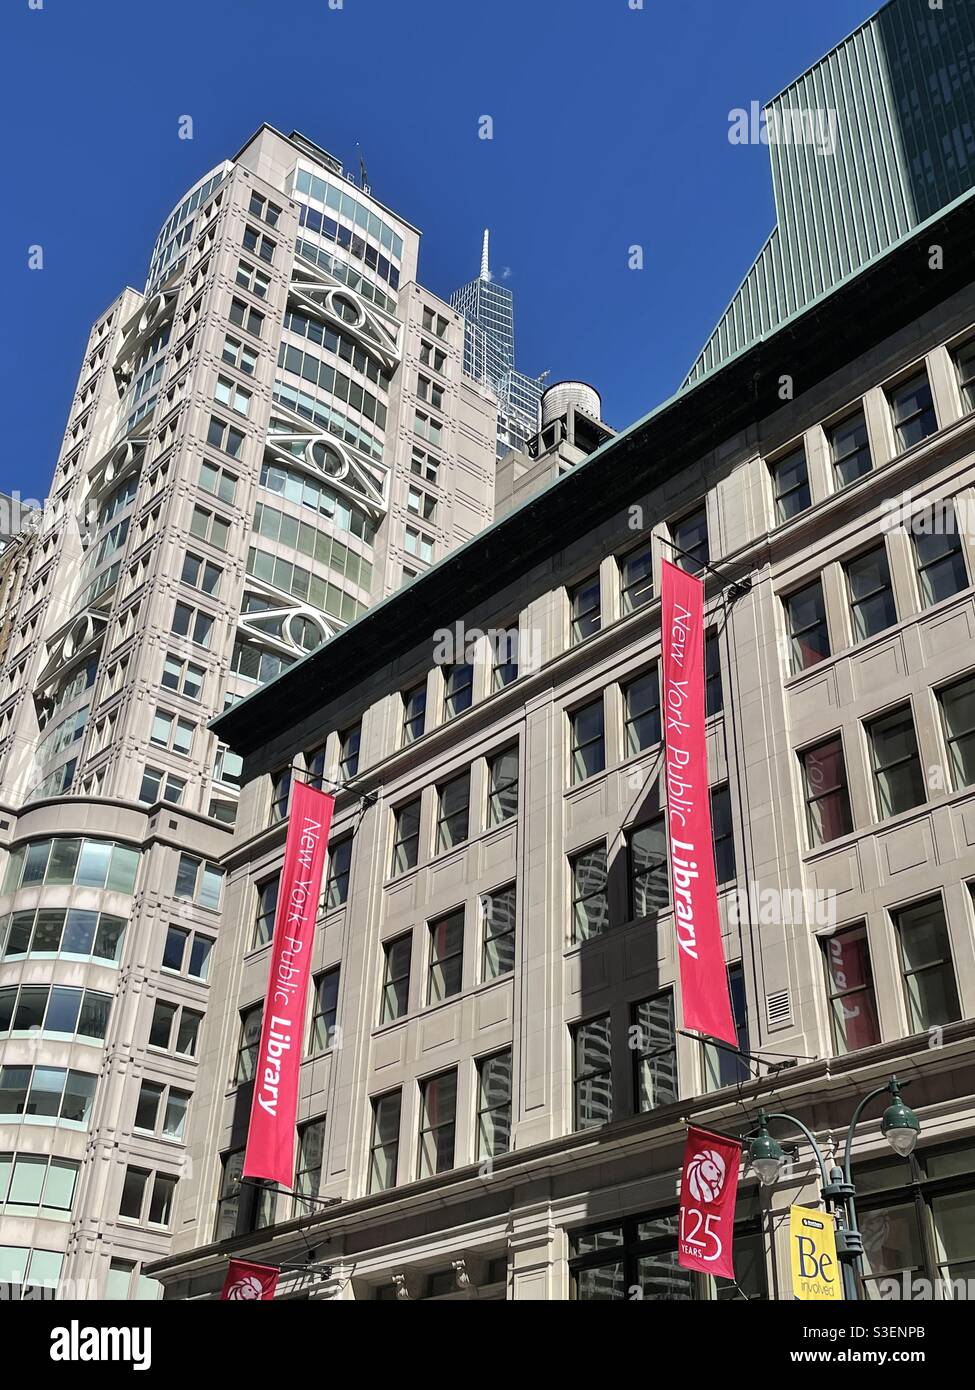 La biblioteca della fondazione StavrosNiarchos si trova al numero 455 della Fifth Avenue nel centro di Manhattan, New York, USA Foto Stock